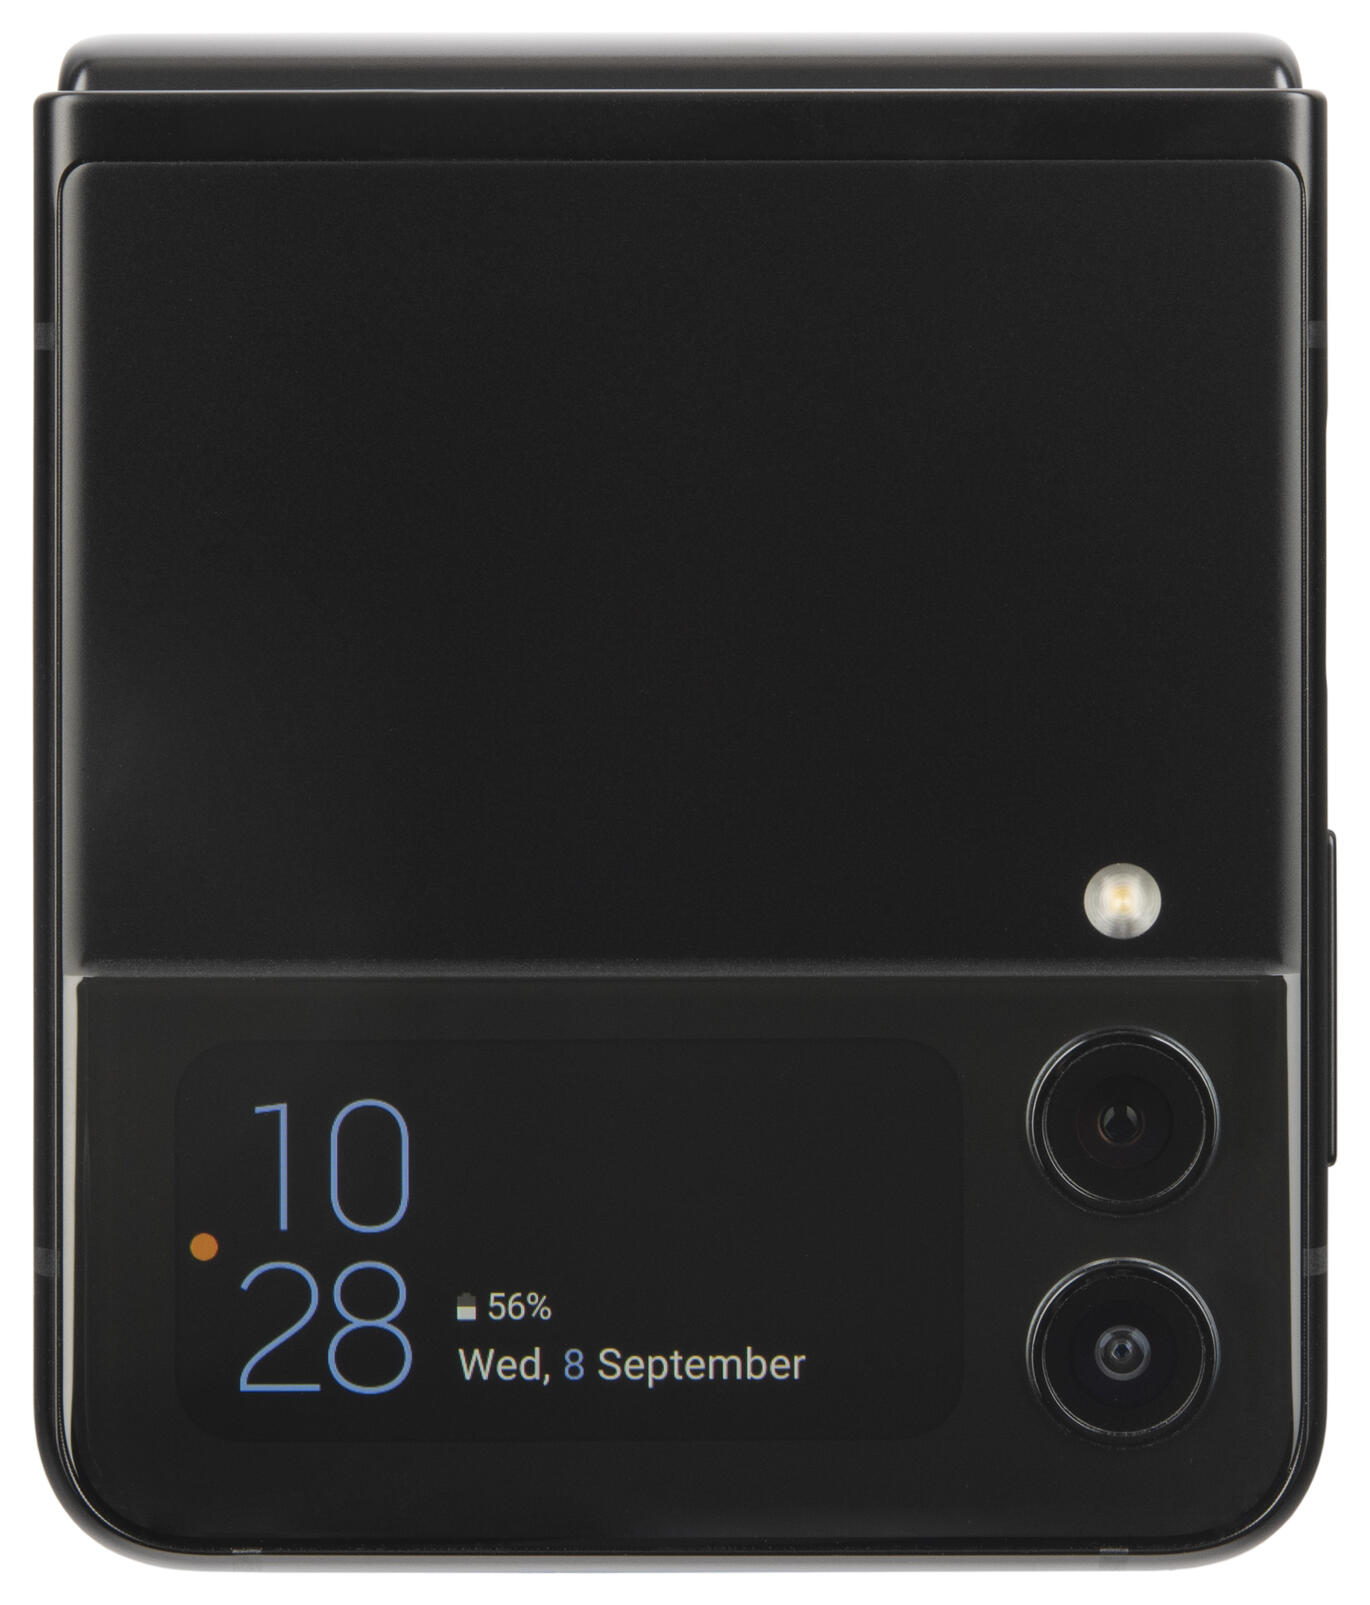 Galaxy Z Flip3 (128GB) Samsung